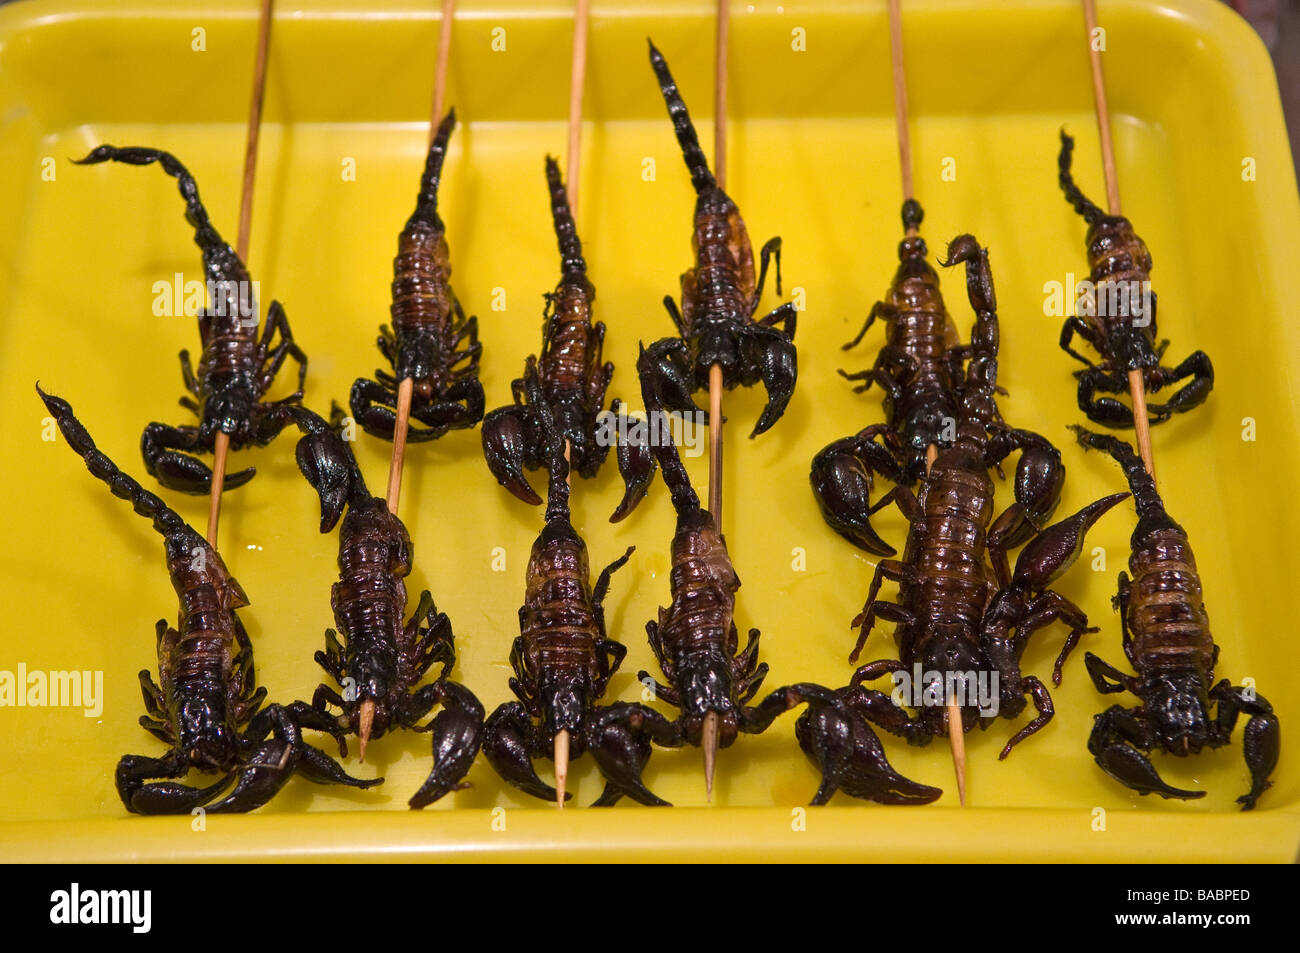 Cibi esotici come grigliate di scorpion in vendita da bancarelle, la Donghuamen Yeshi mercato notturno, Pechino, Cina Foto Stock